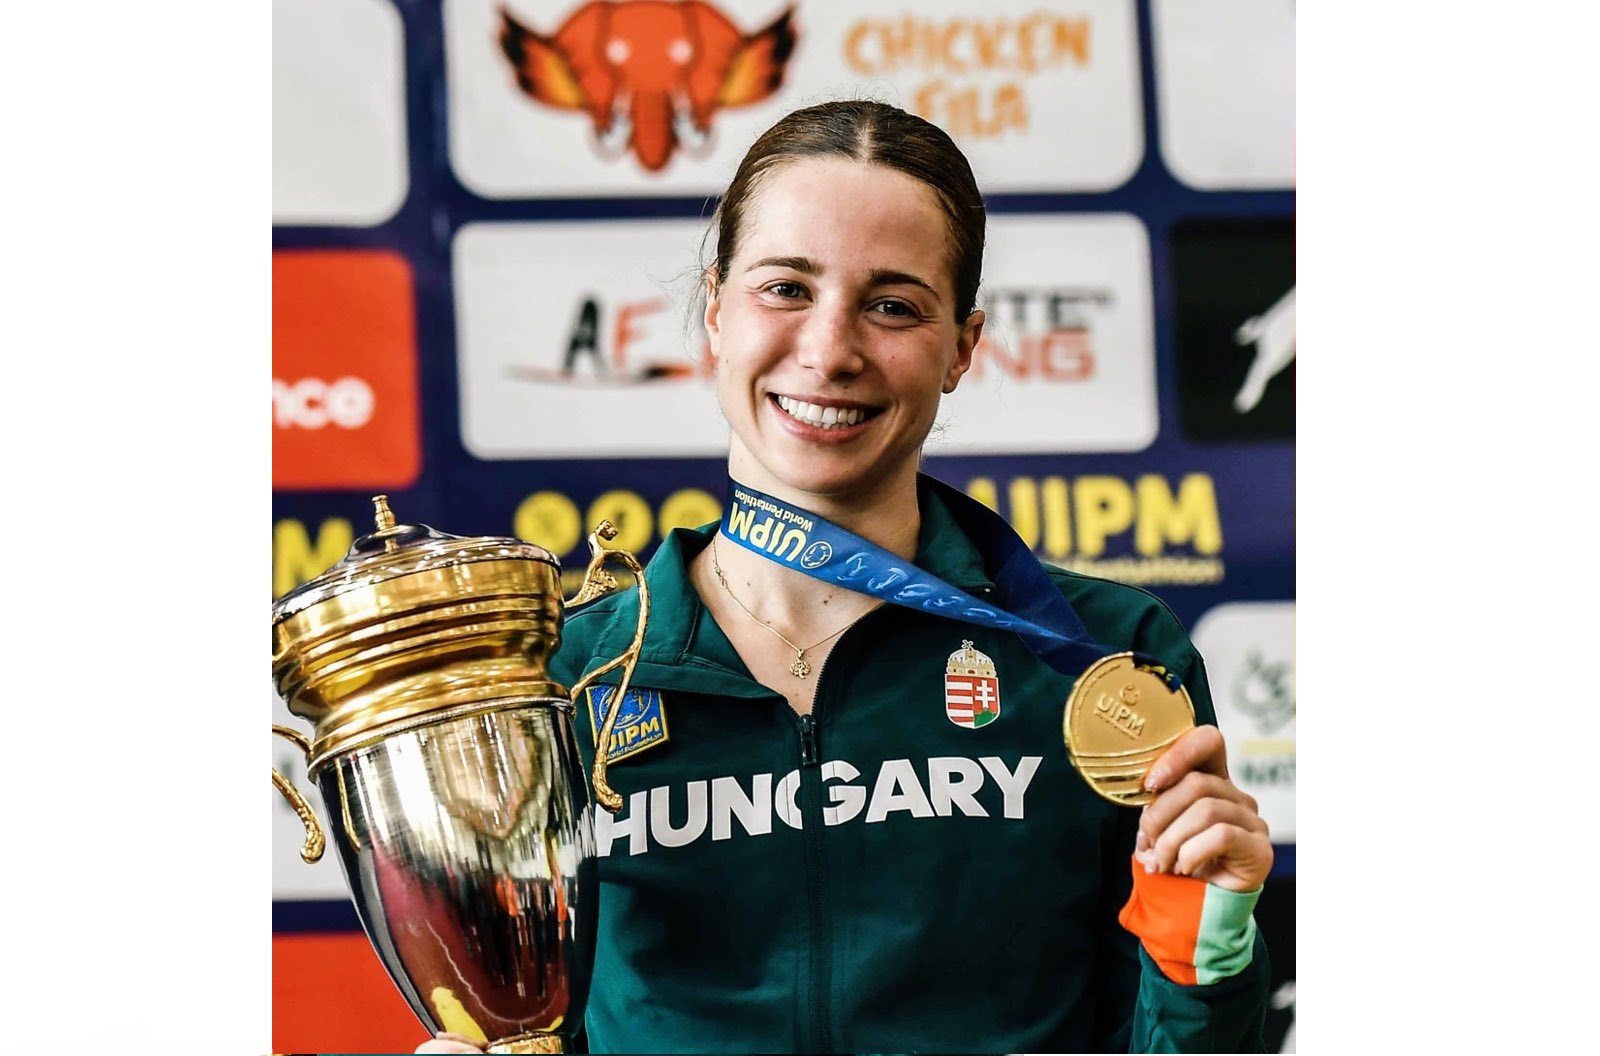 Ungarischer Sieg im Fünfkampf der Frauen beim ersten Weltcup in diesem Jahr